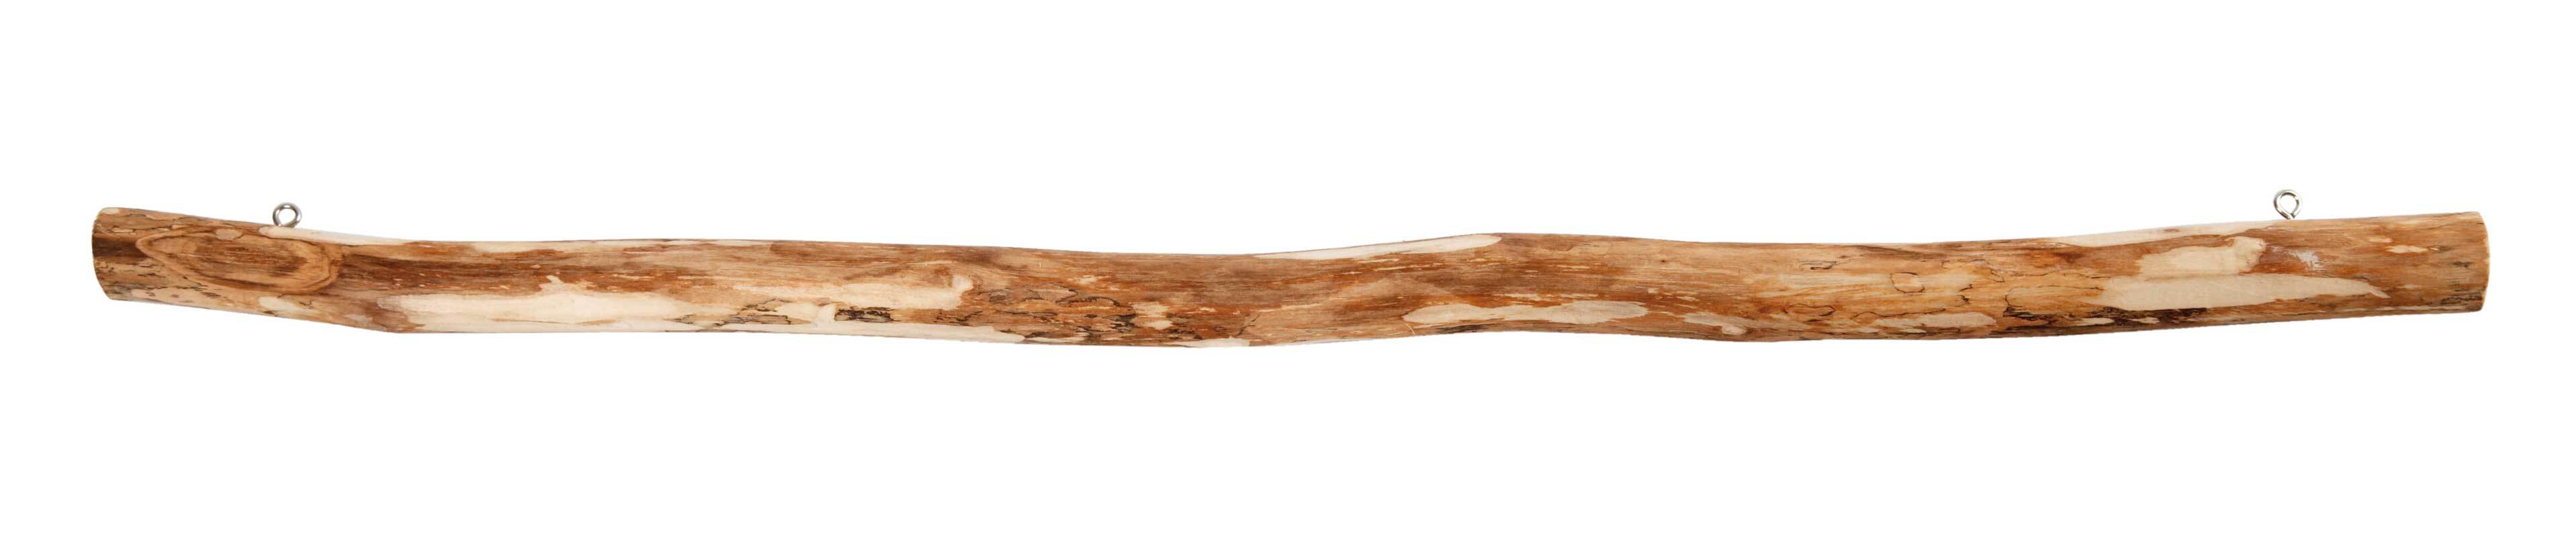 Bâton en bois, 40 cm